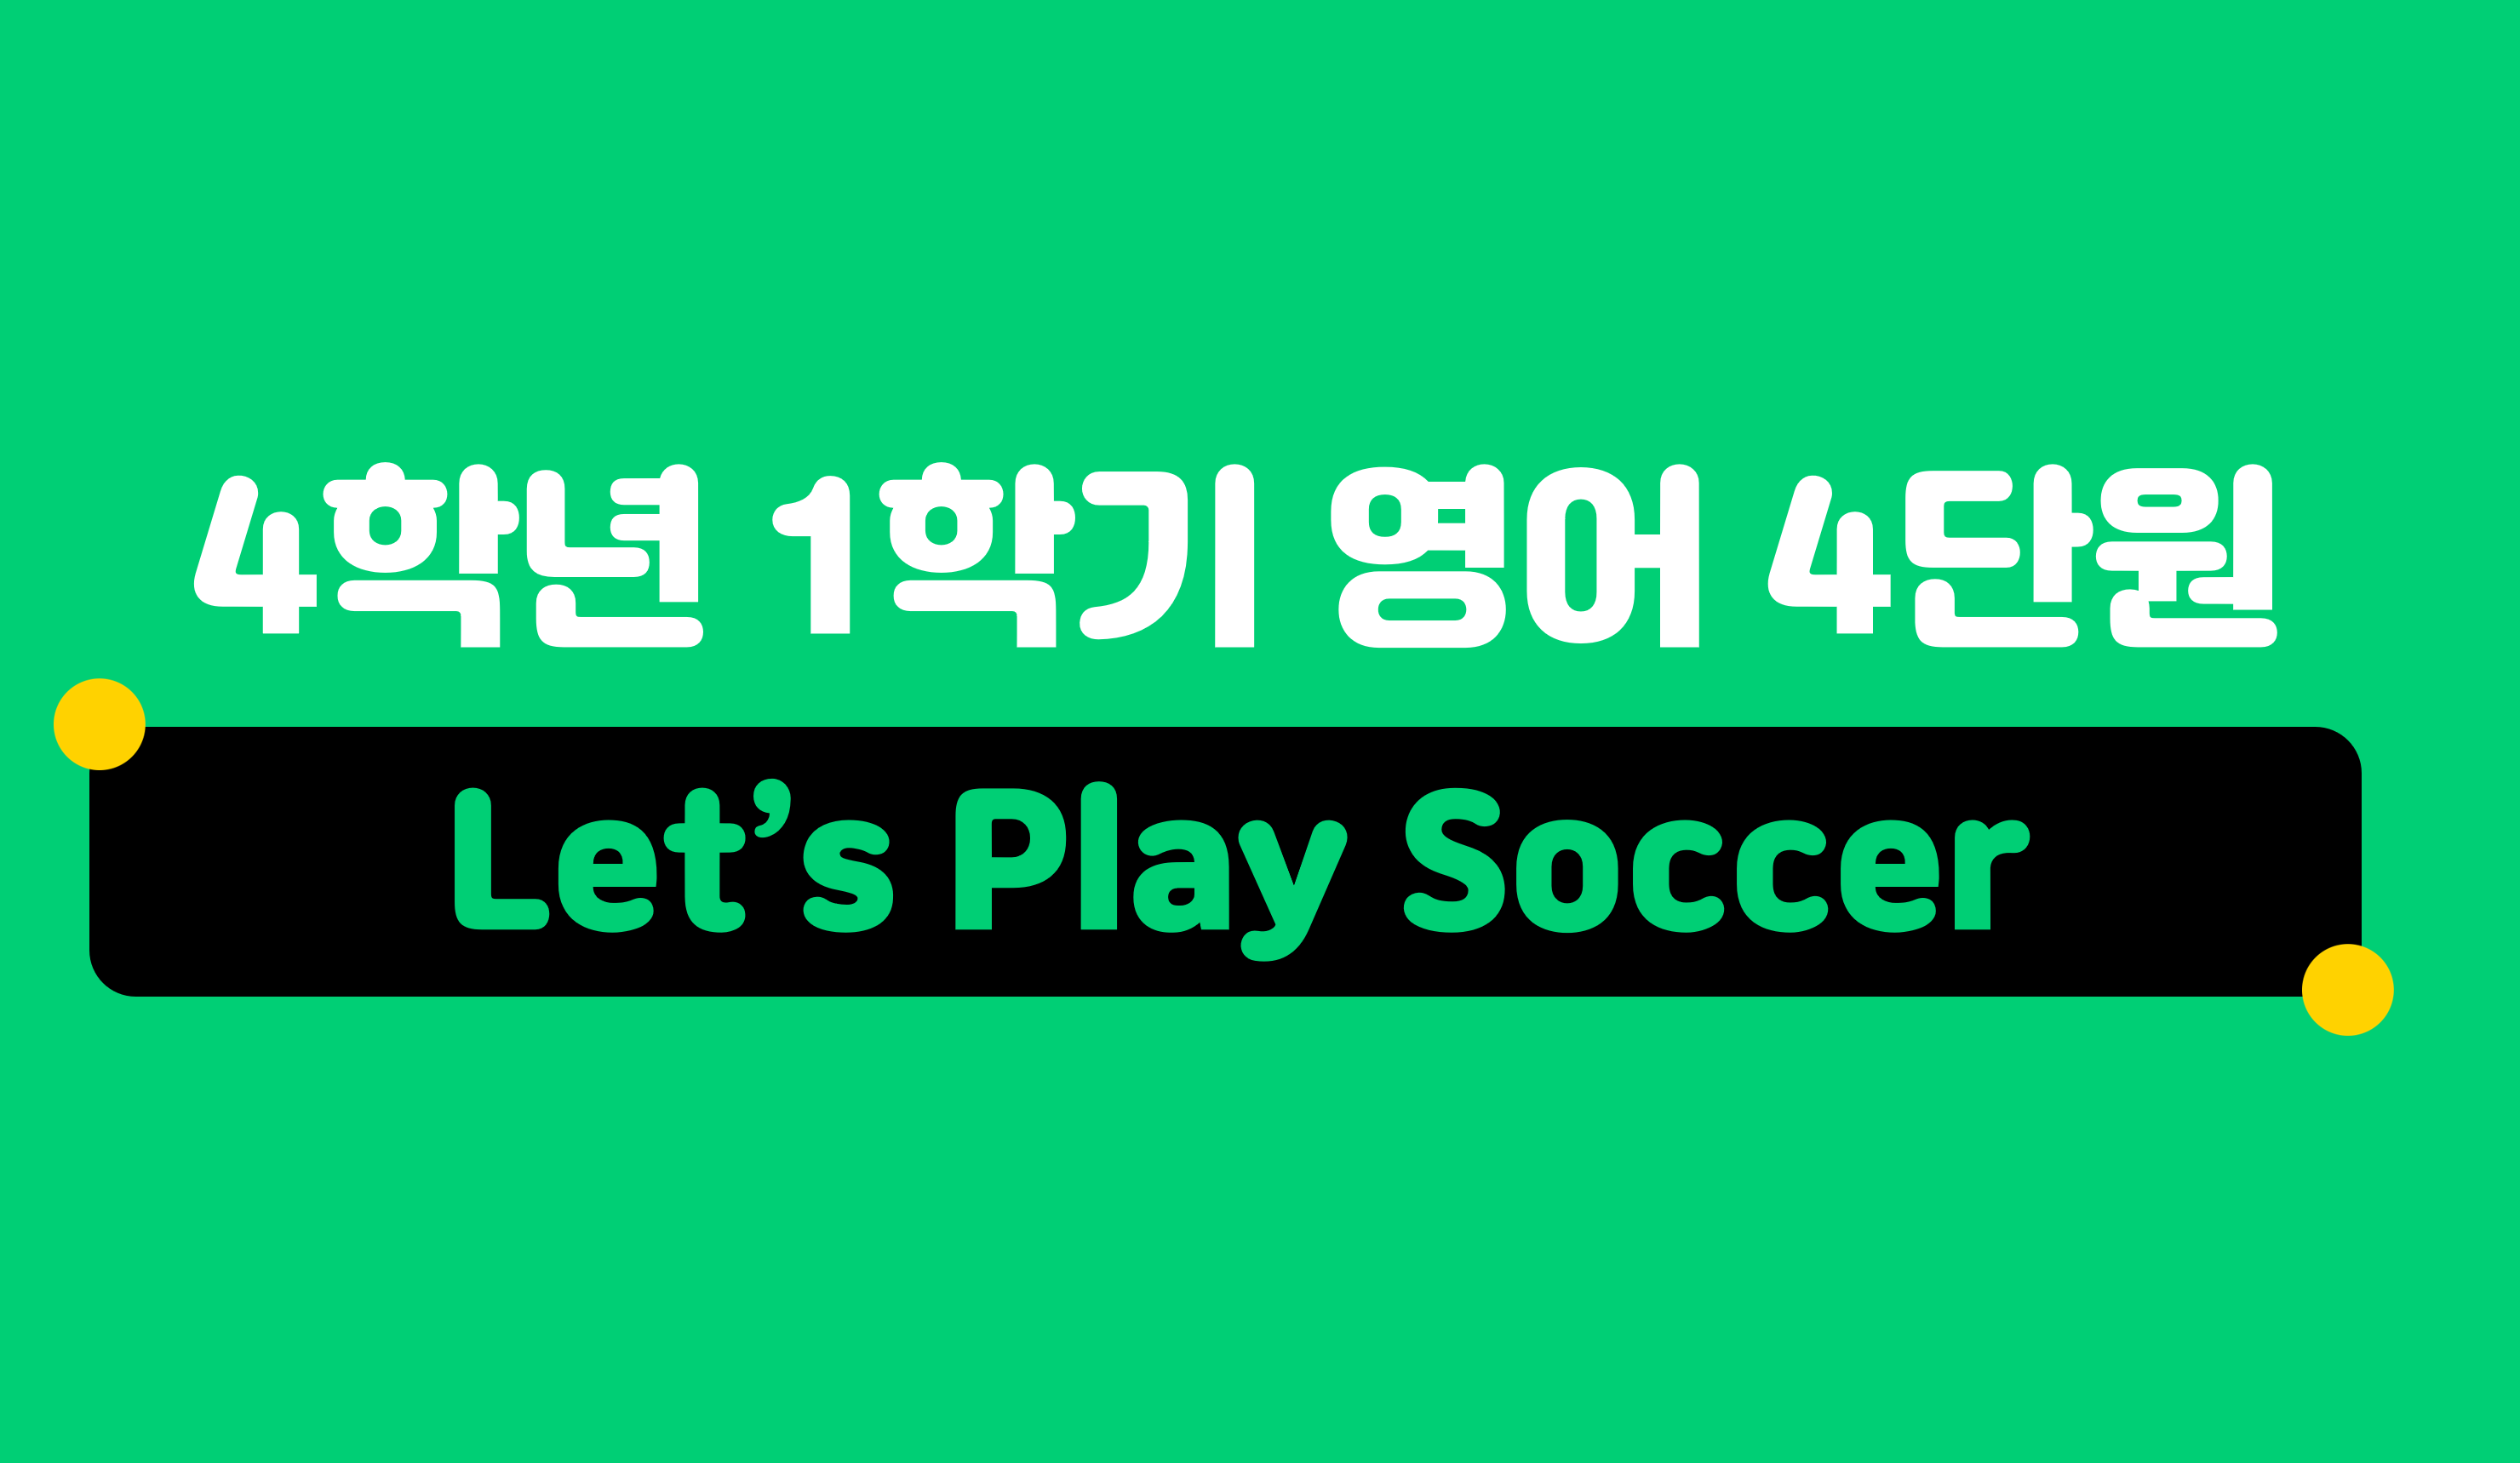 Let’s Play Soccer | 4학년 1학기 영어 4단원 | 홈런 초등